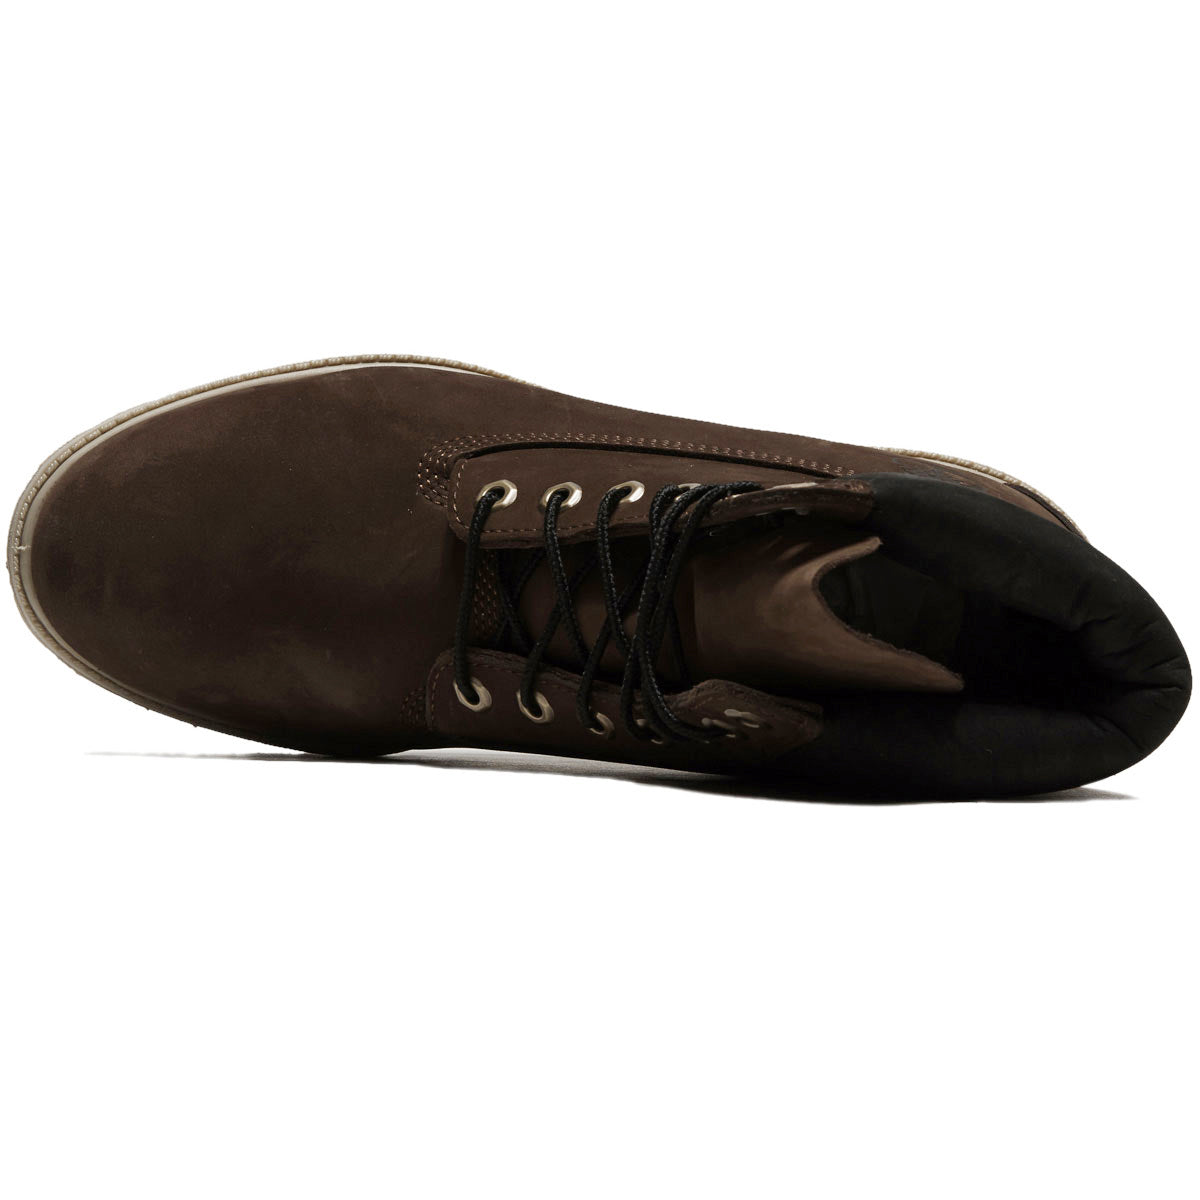 Timberland 6 Inch Premium Boots - Dark Brown Nubuck image 3